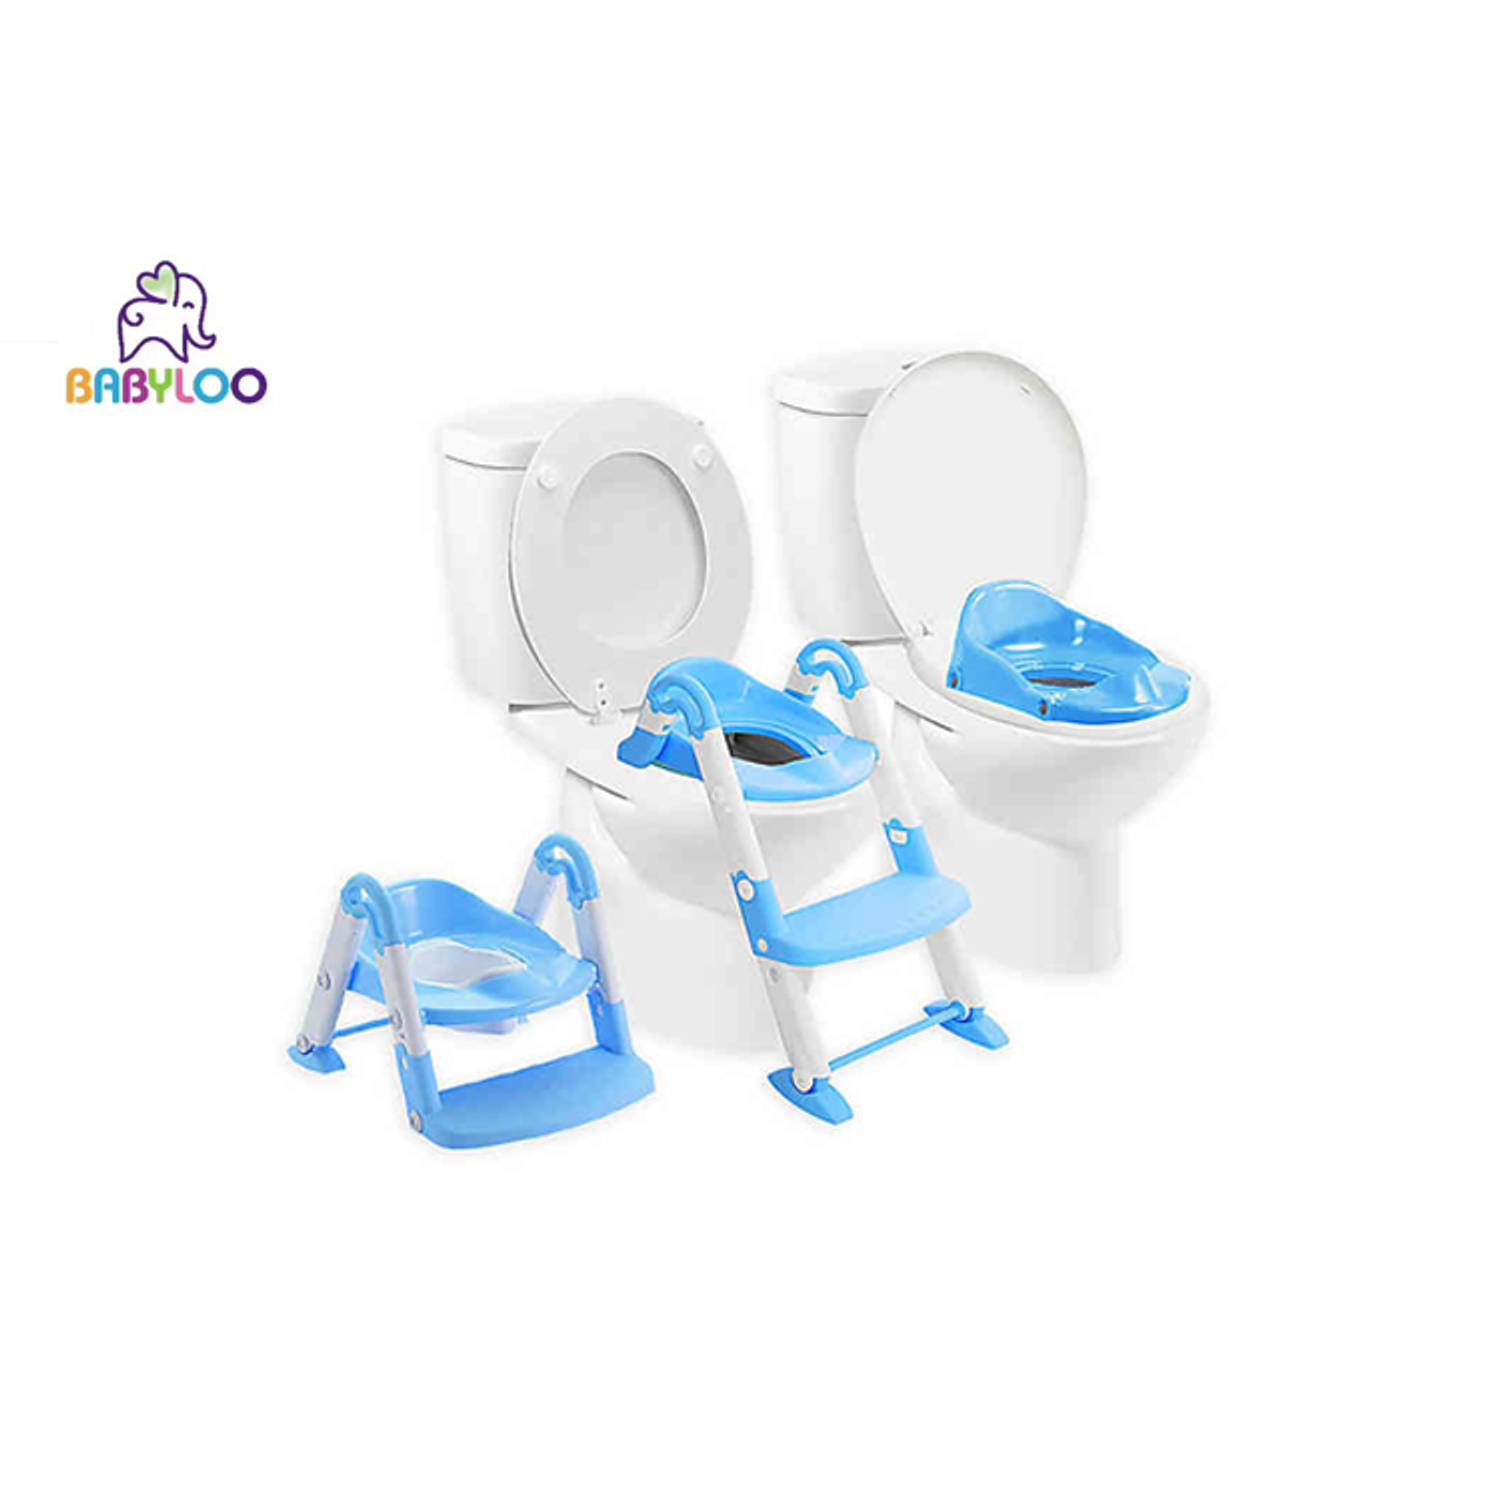 Babyloo Bambino 3 in 1 kinder-toiletbril Kinderpotje